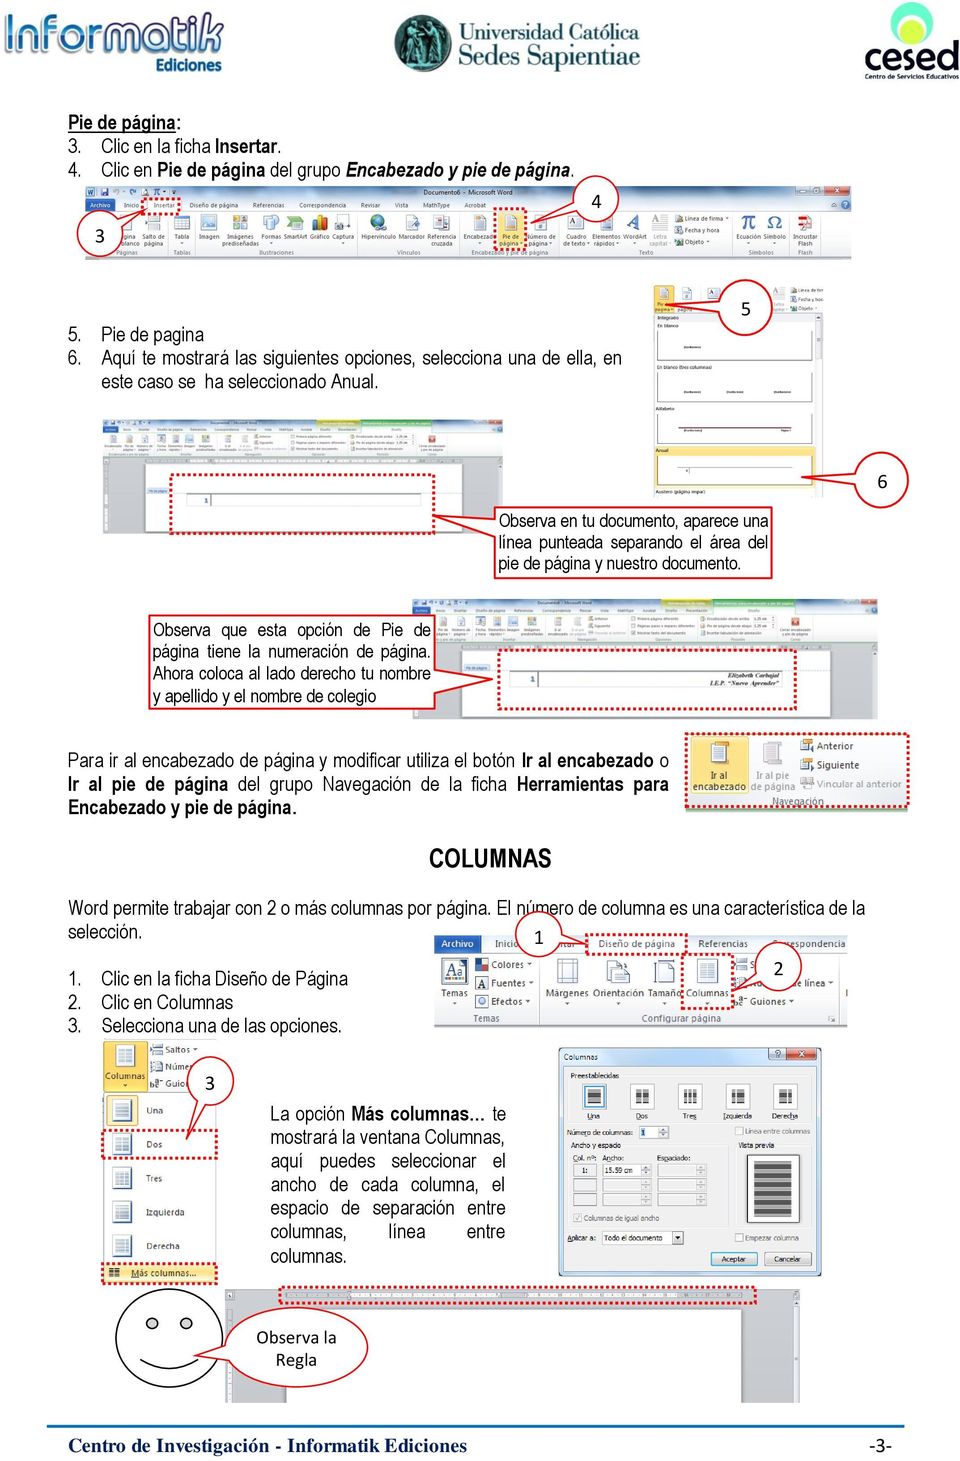 5 6 Observa en tu documento, aparece una línea punteada separando el área del pie de página y nuestro documento. Observa que esta opción de Pie de página tiene la numeración de página.